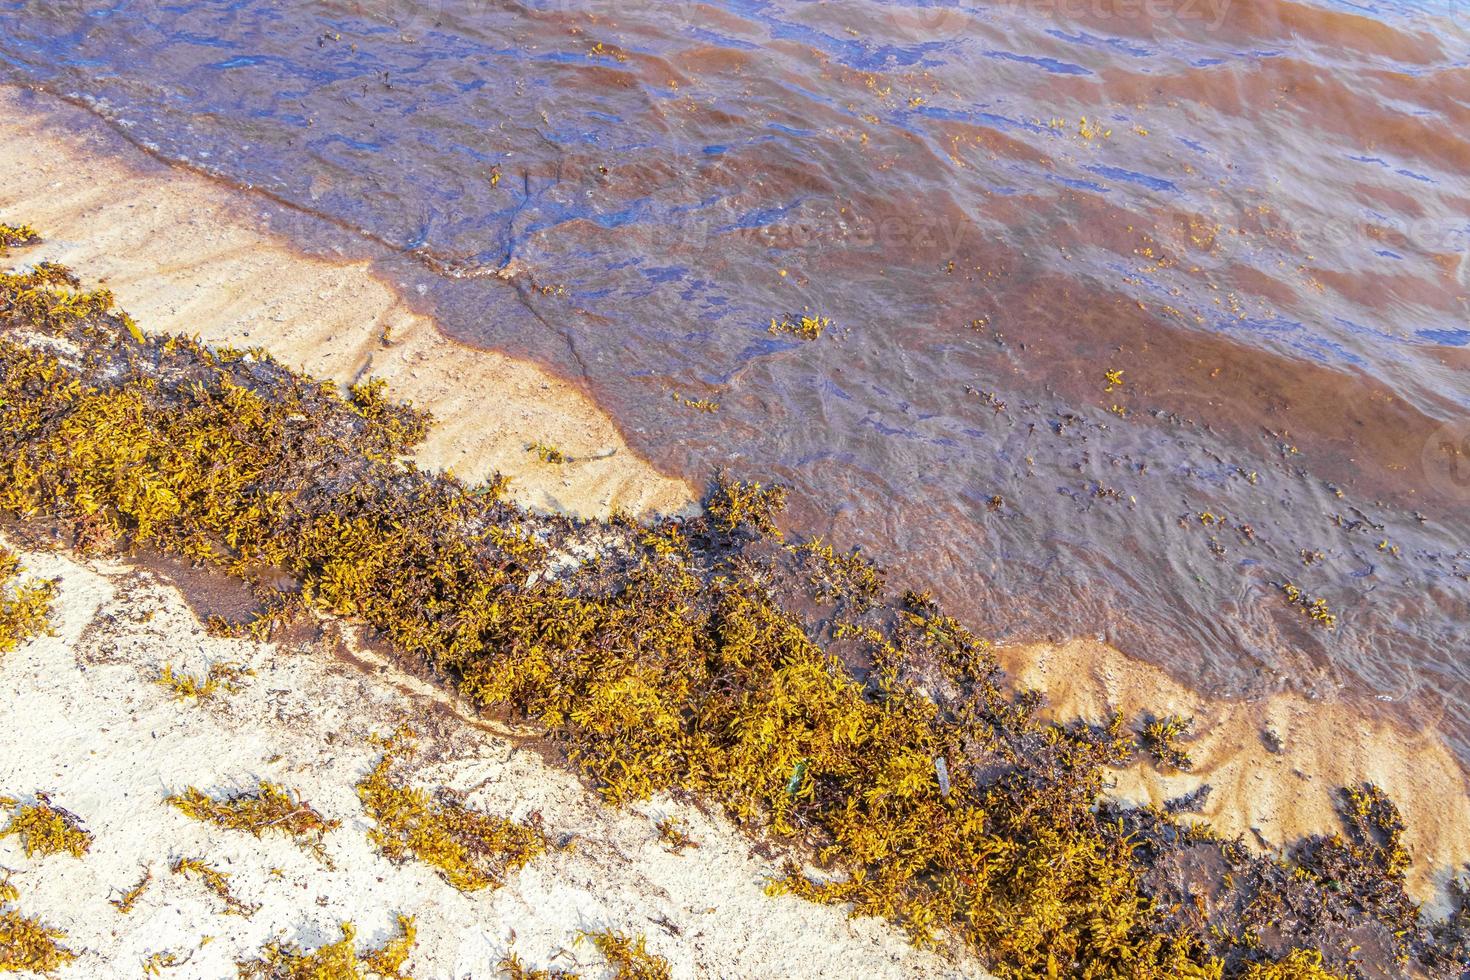 molto disgustoso spiaggia acqua con rosso alga marina sargazo caraibico Messico. foto